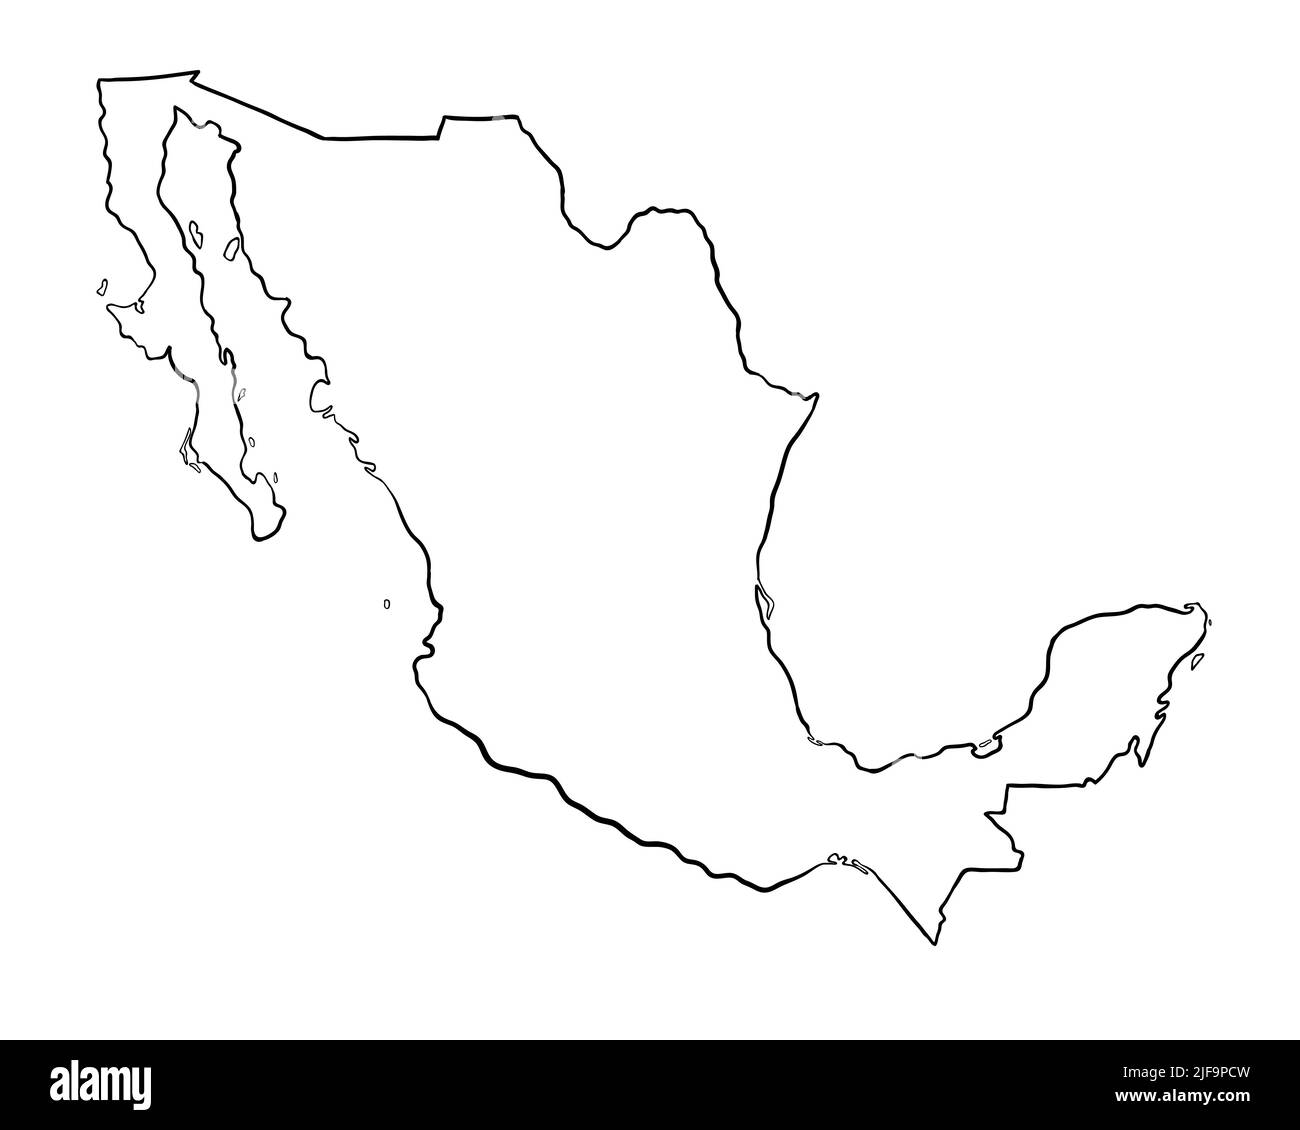 Mexique - carte dessinée à la main Banque D'Images